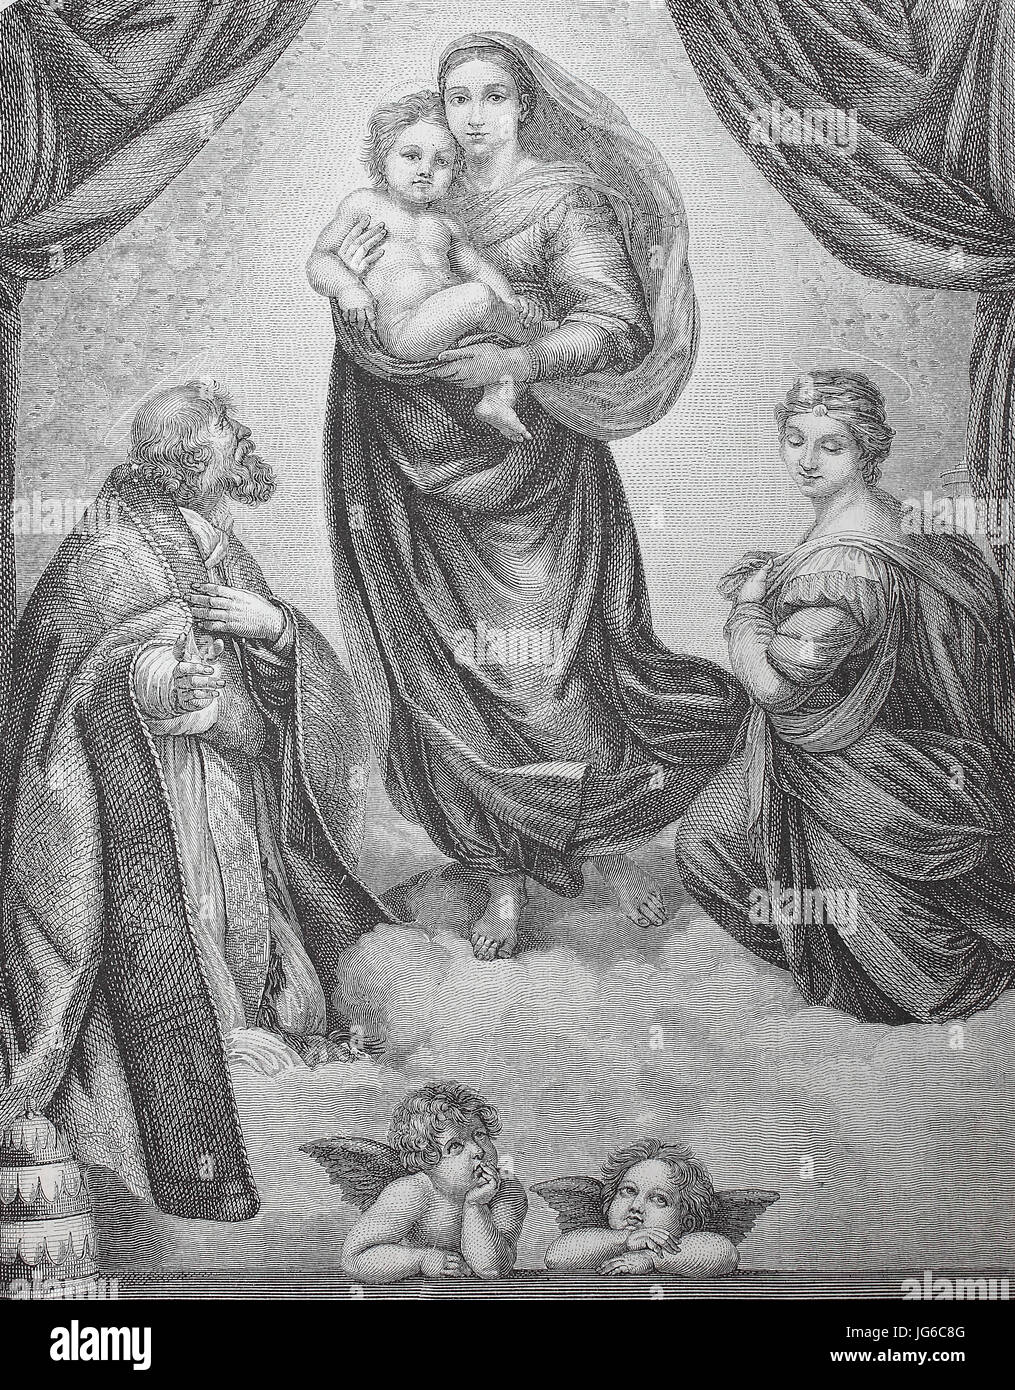 Amélioration numérique :, La Vierge Sixtine, aussi appelée la Madonna di San Sisto, est une peinture à l'huile par l'artiste italien Raphael Sanzio, illustration du 19ème siècle Banque D'Images